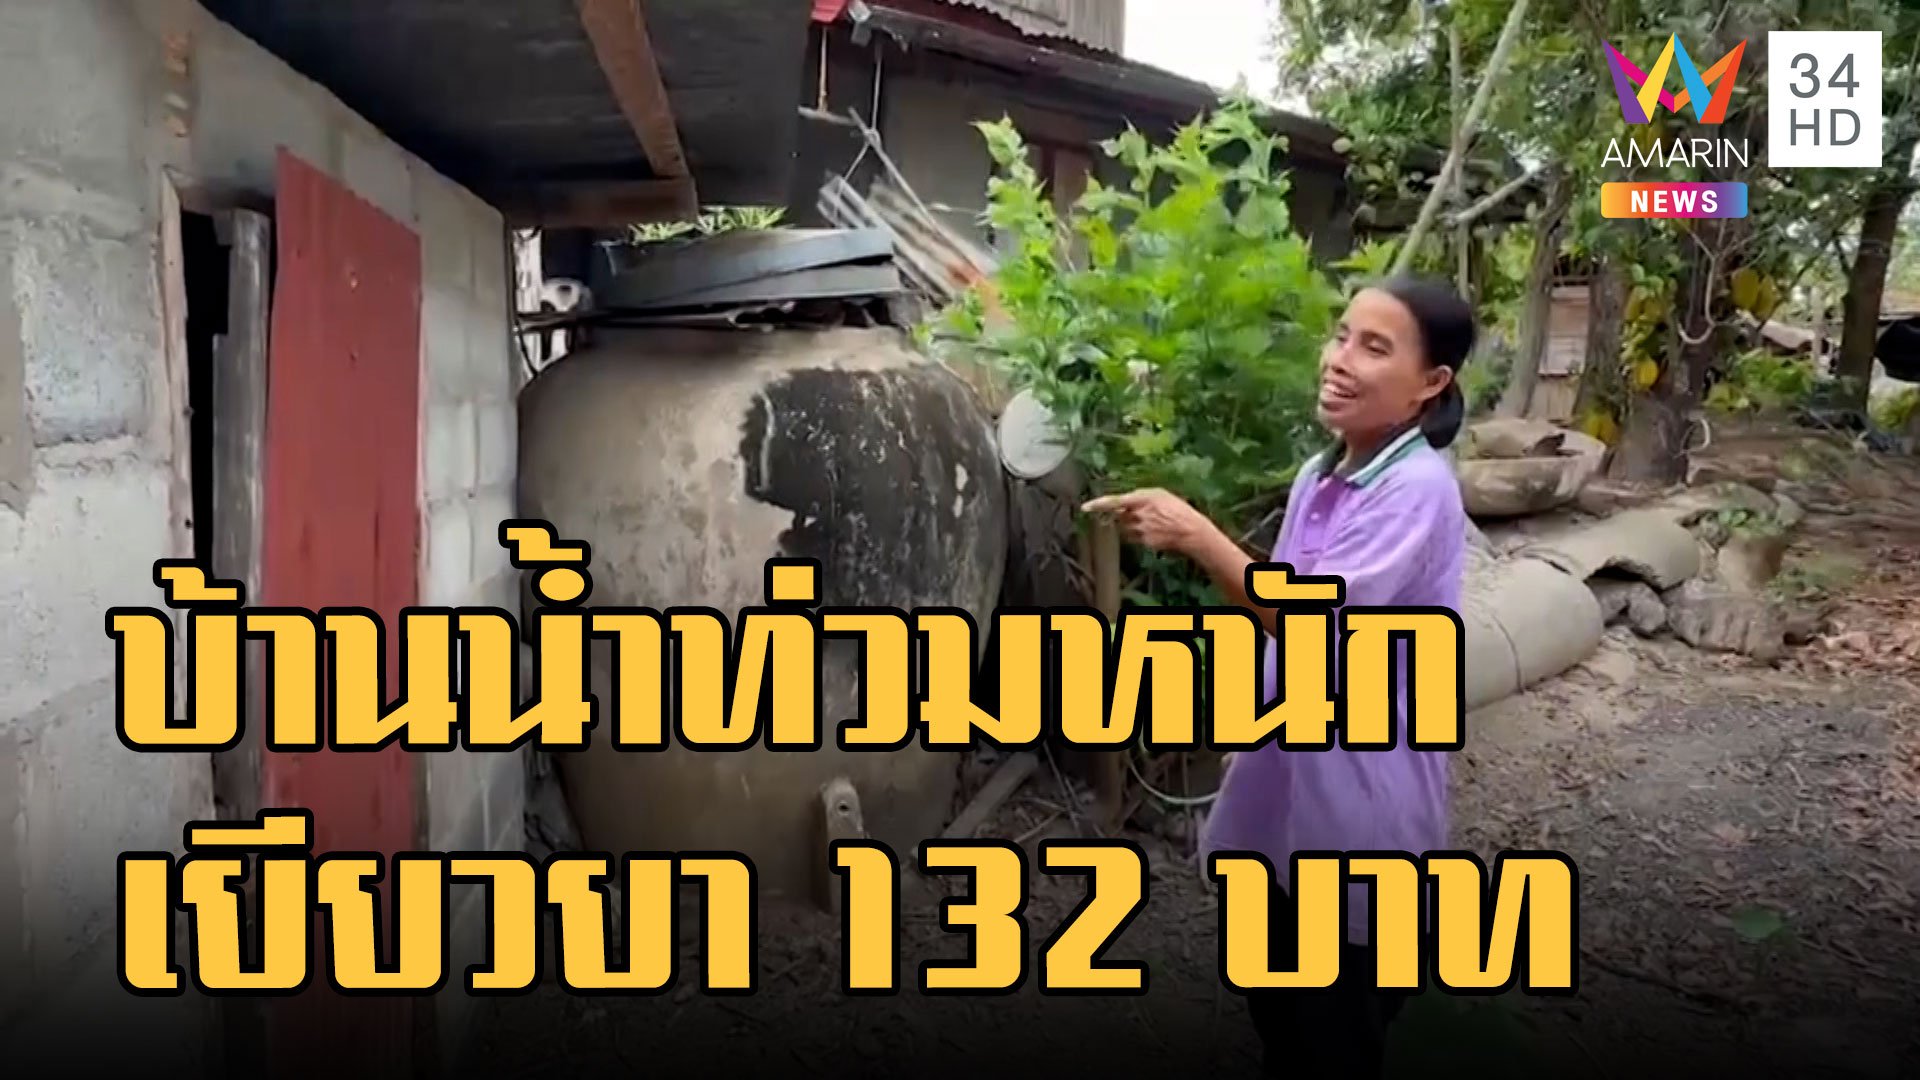 สำรวจยังไง! บ้านน้ำท่วมมิดได้ชดเชย 132 บาท | ข่าวเที่ยงอมรินทร์ | 6 ธ.ค. 65 | AMARIN TVHD34